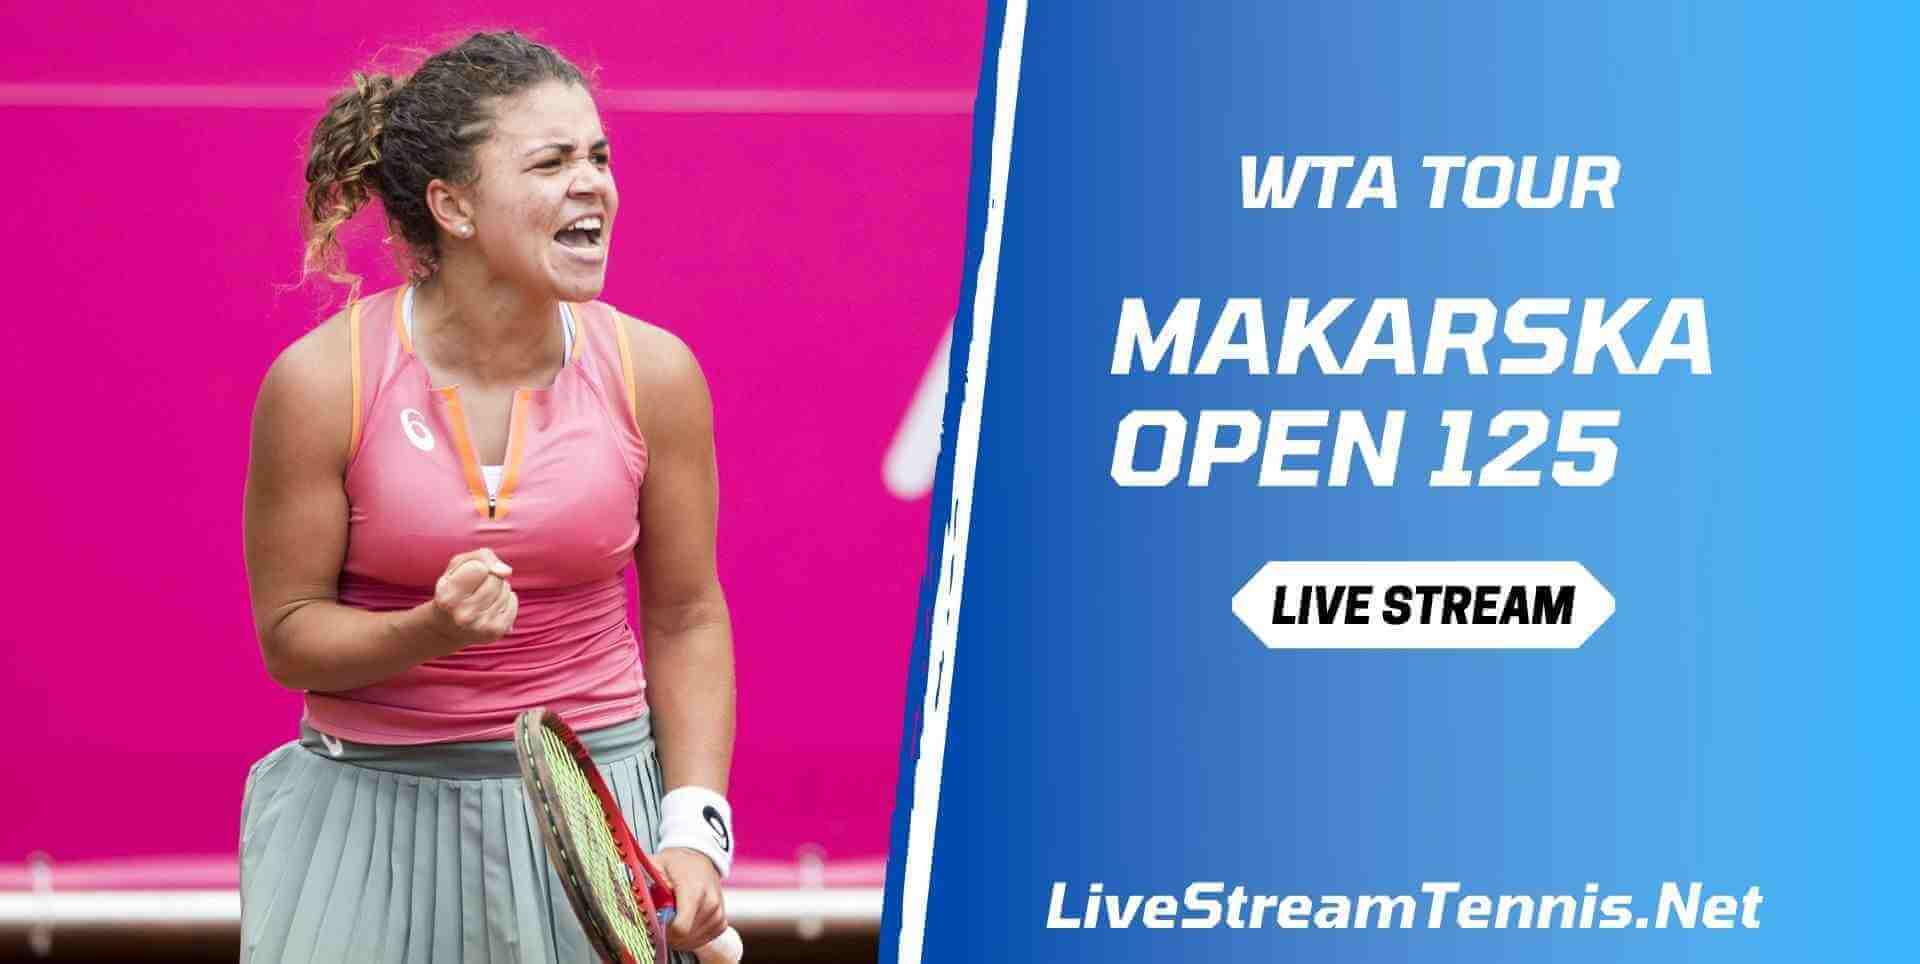 Makarska Open 125 Live Stream WTA Tennis